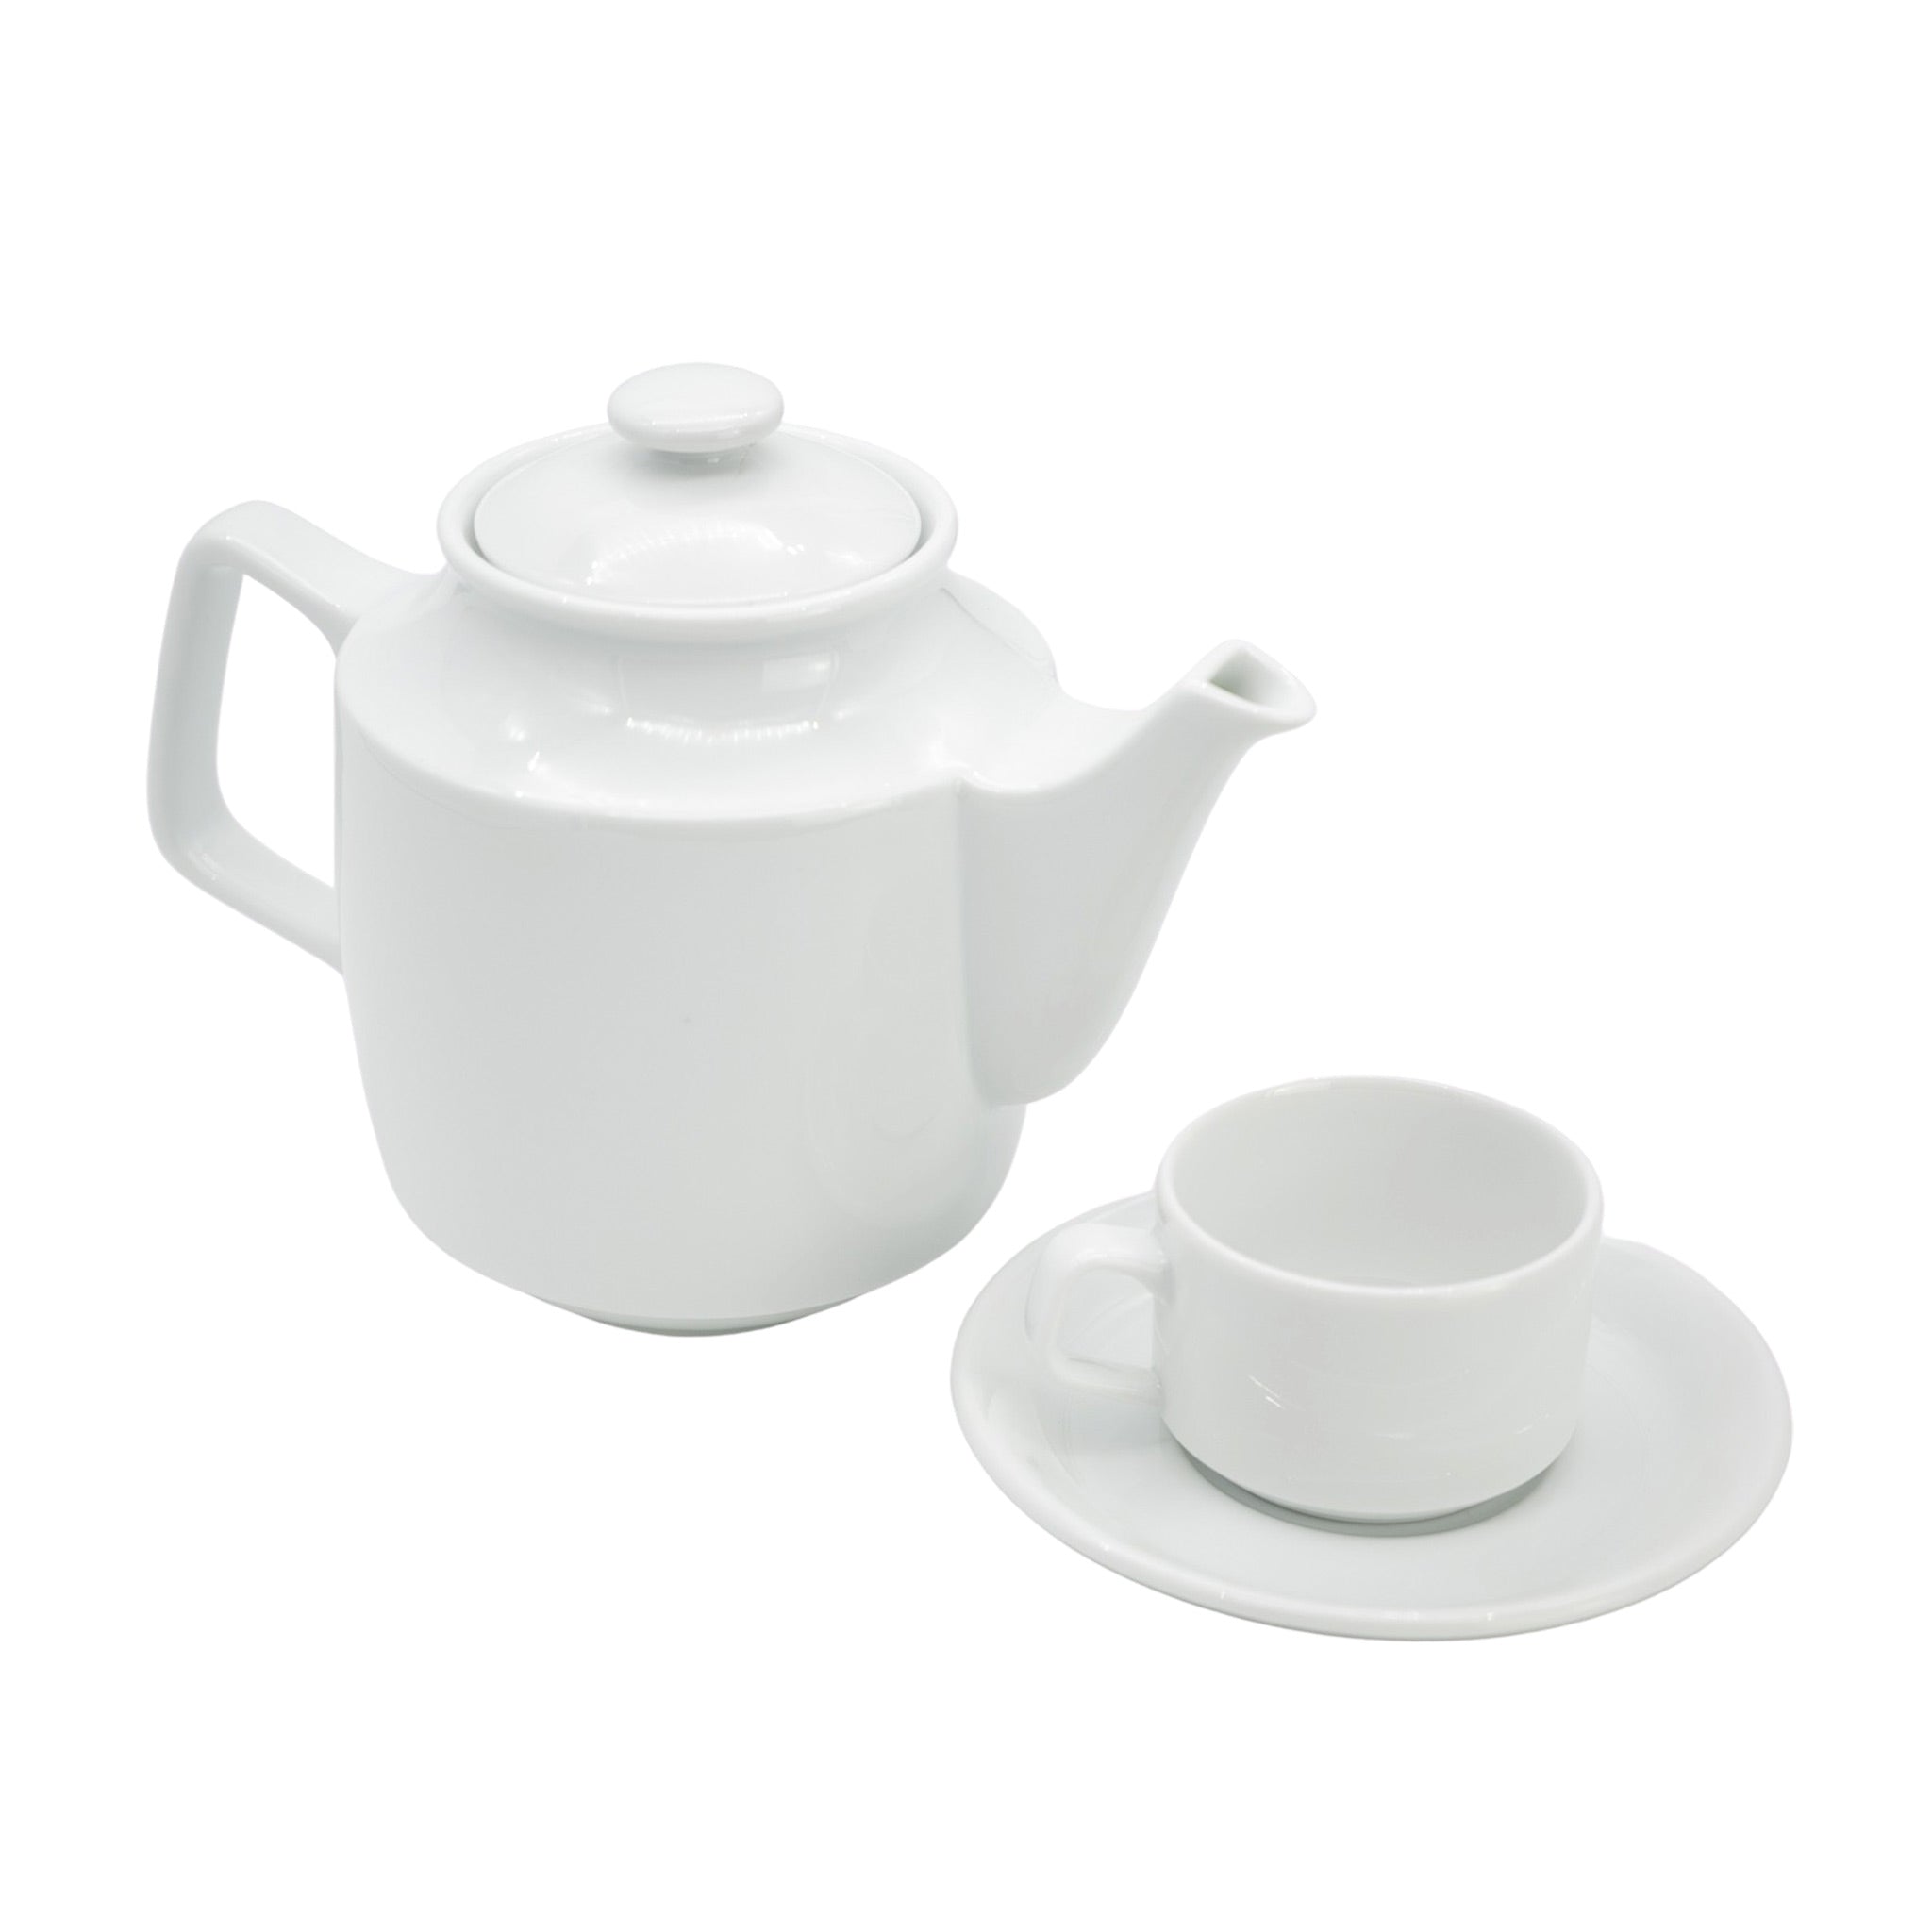 Jasmine White Artisan Tea Set 0.7L (Small Set)